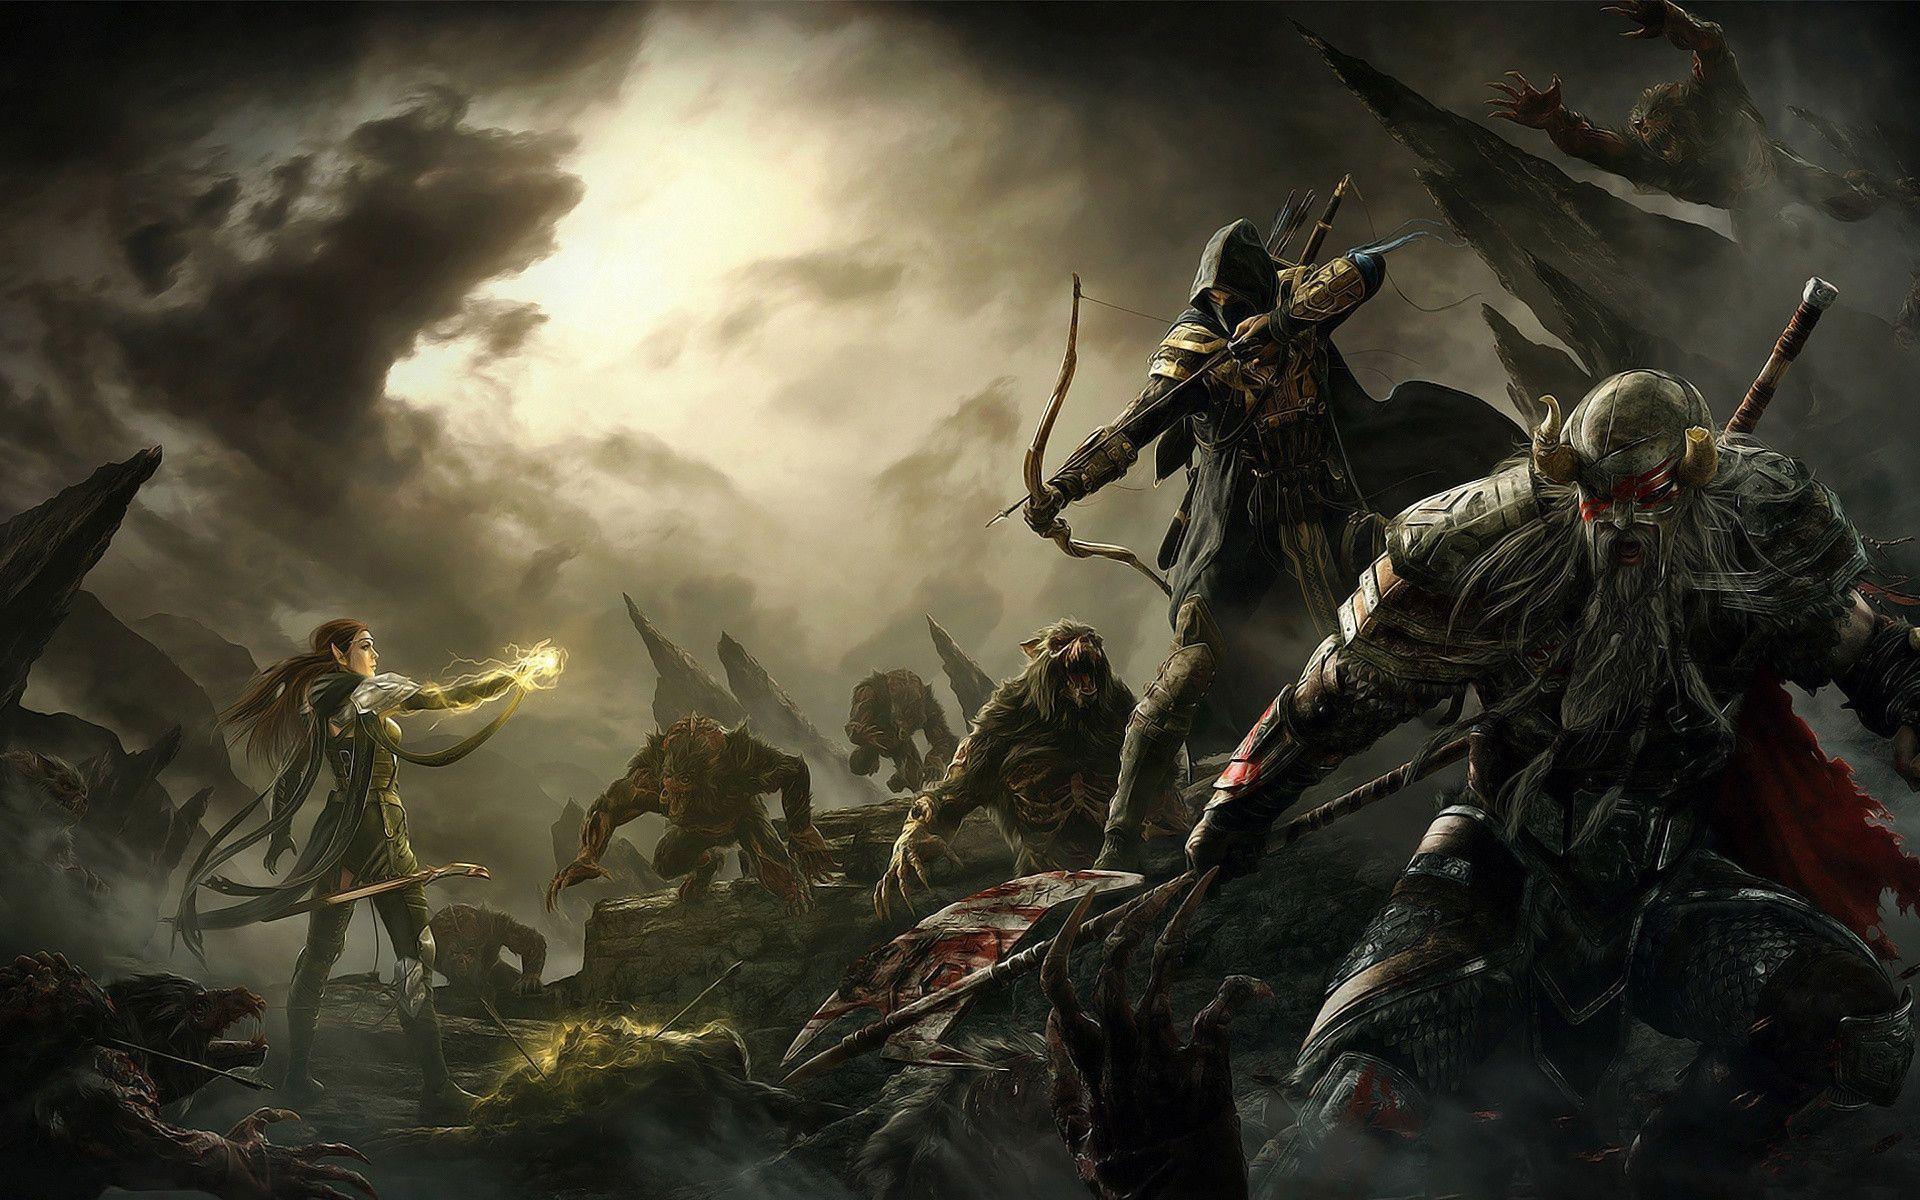 The Elder Scrolls Online 2014 Wallpaper. HD Wallpaper